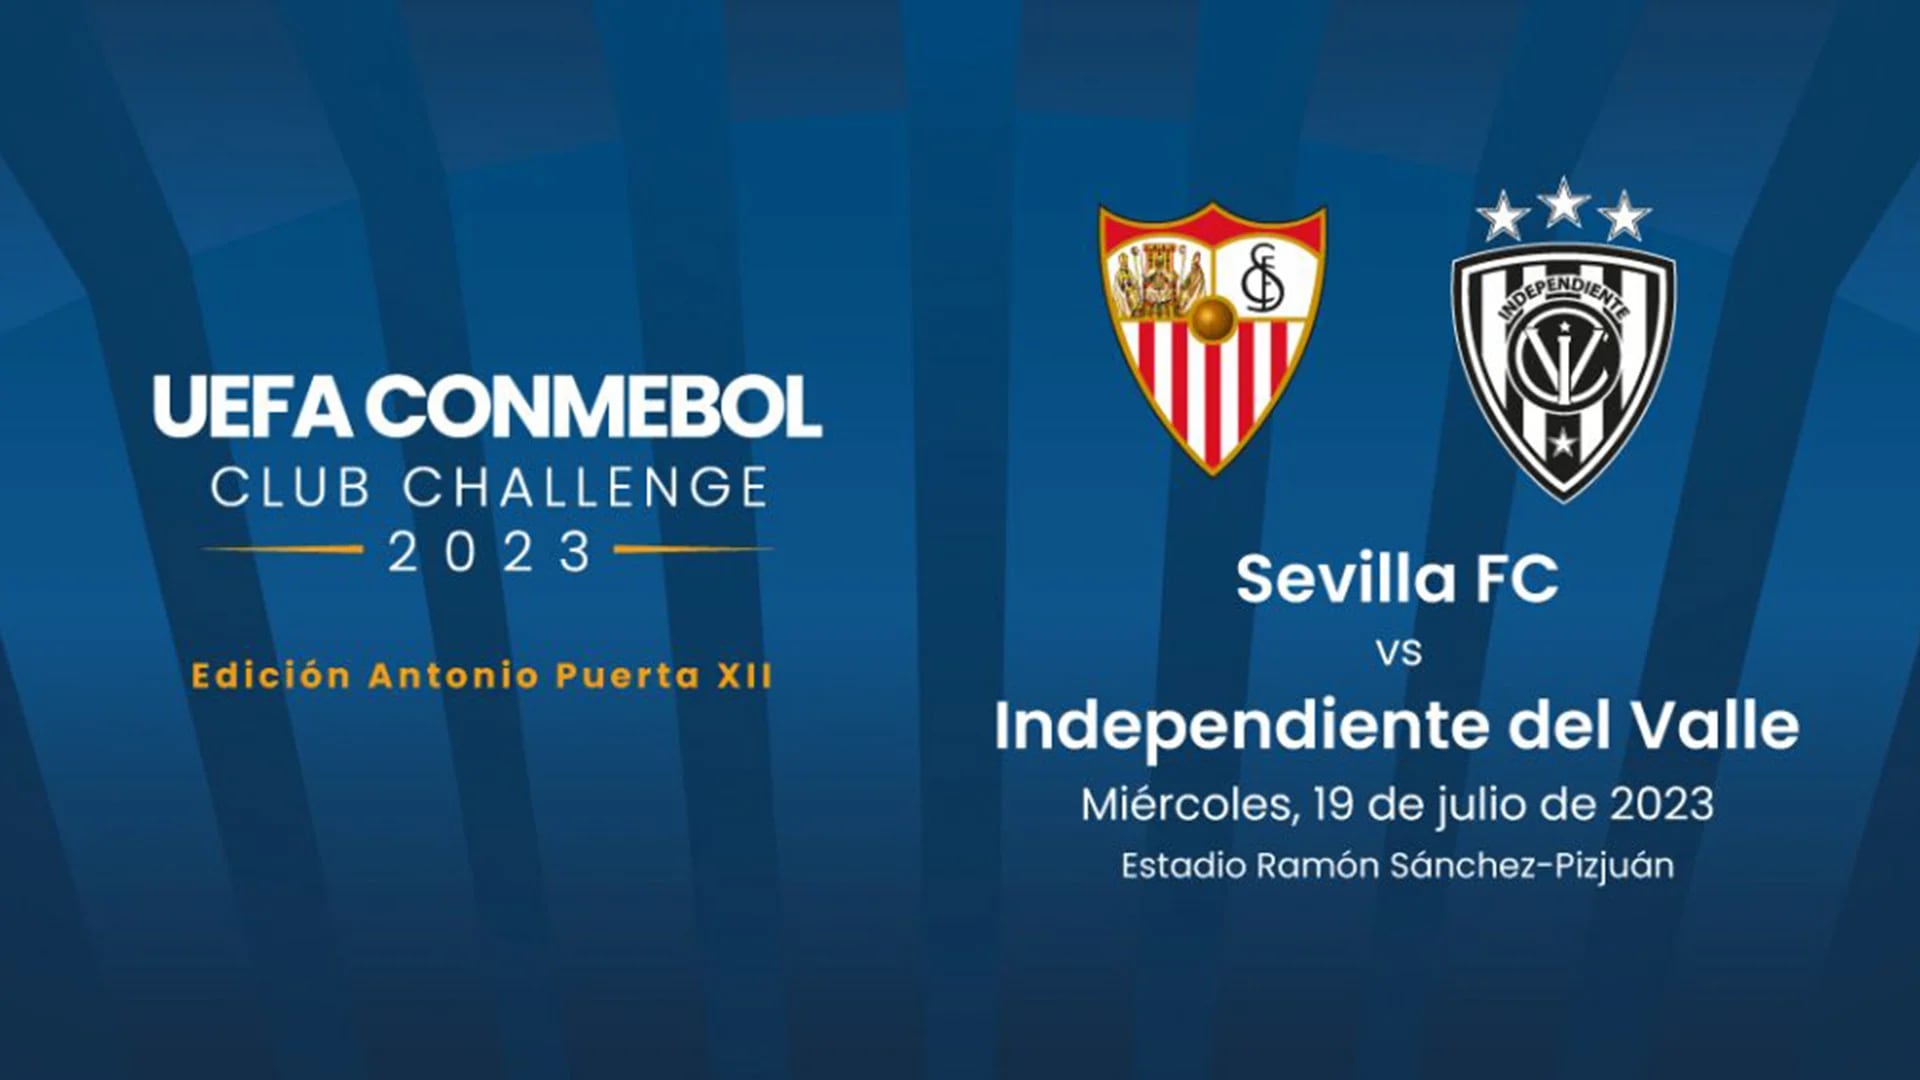 Independiente del Valle (Ecuador) se enfrentará al Sevilla (España) en la Copa UEFA-Conmebol Desafío de Clubes 2023.